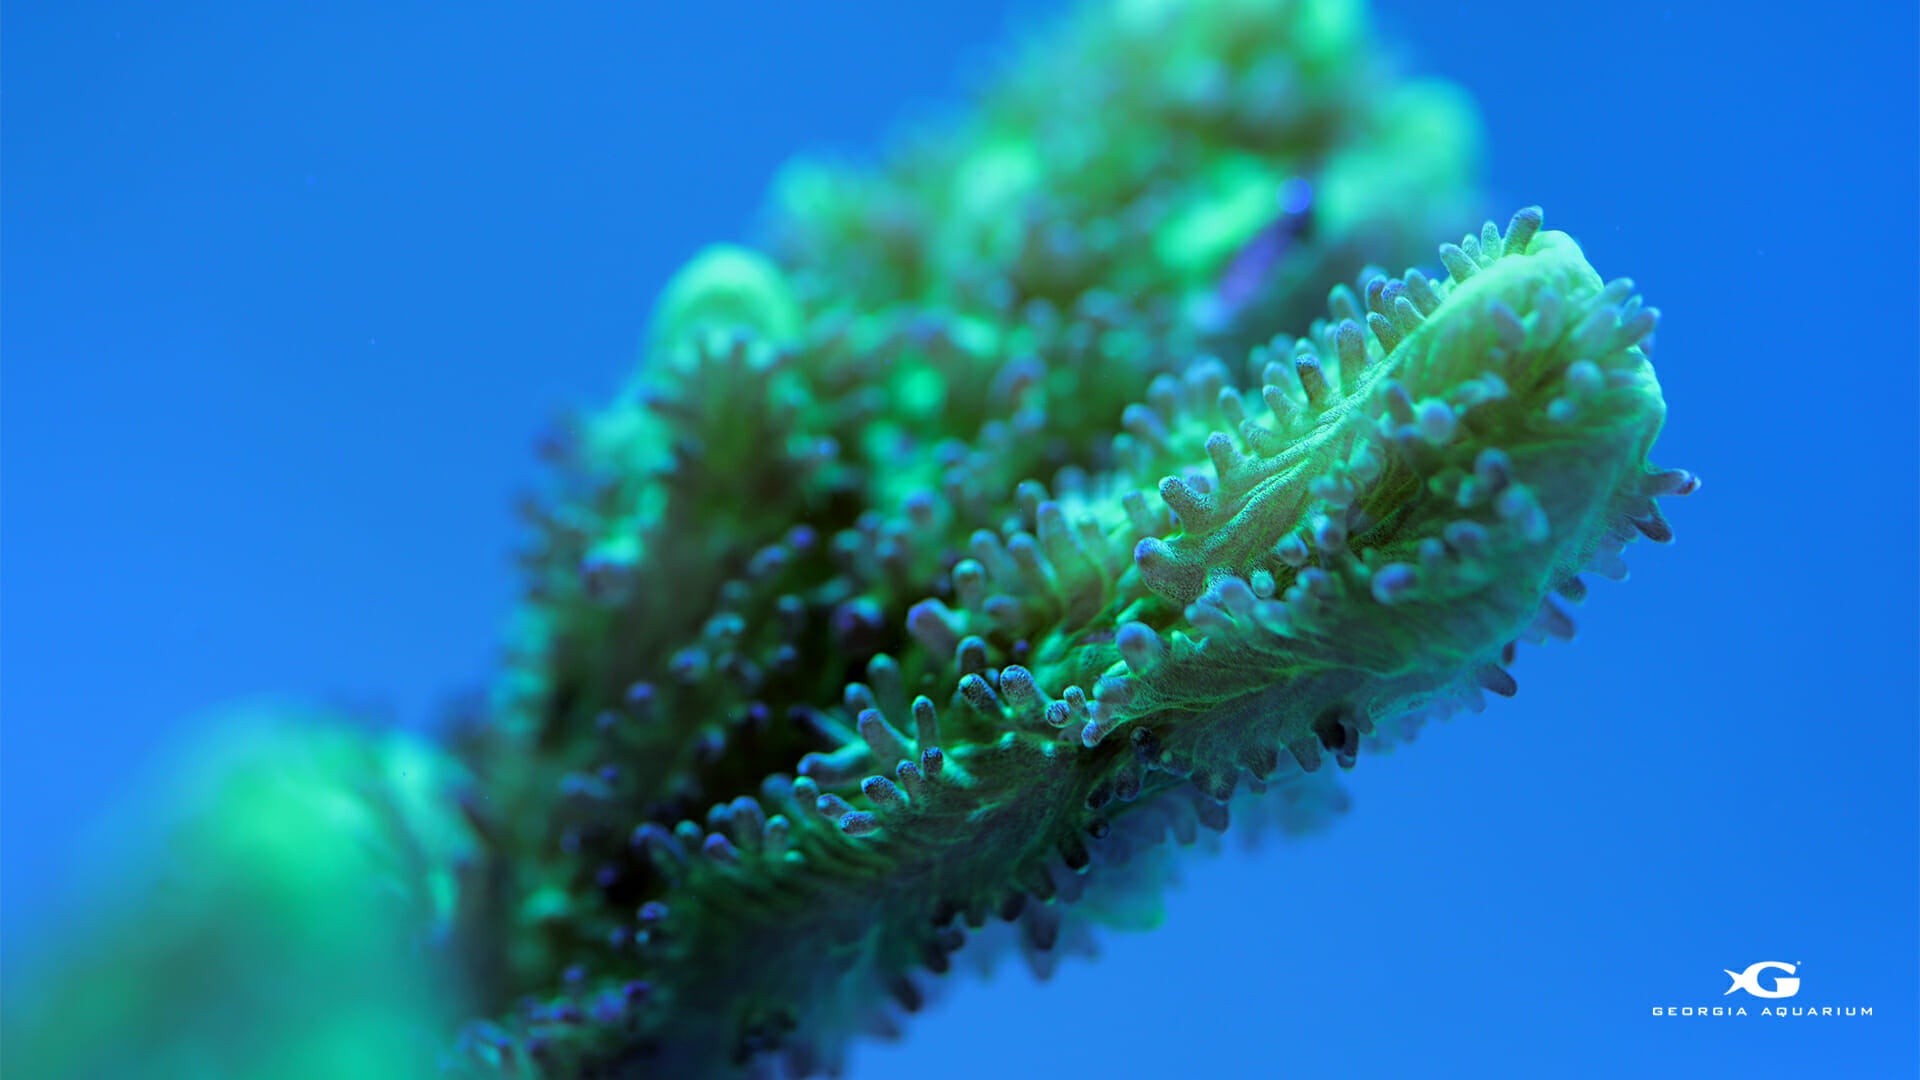 Georgia Aquarium Coral Reef Awareness Week